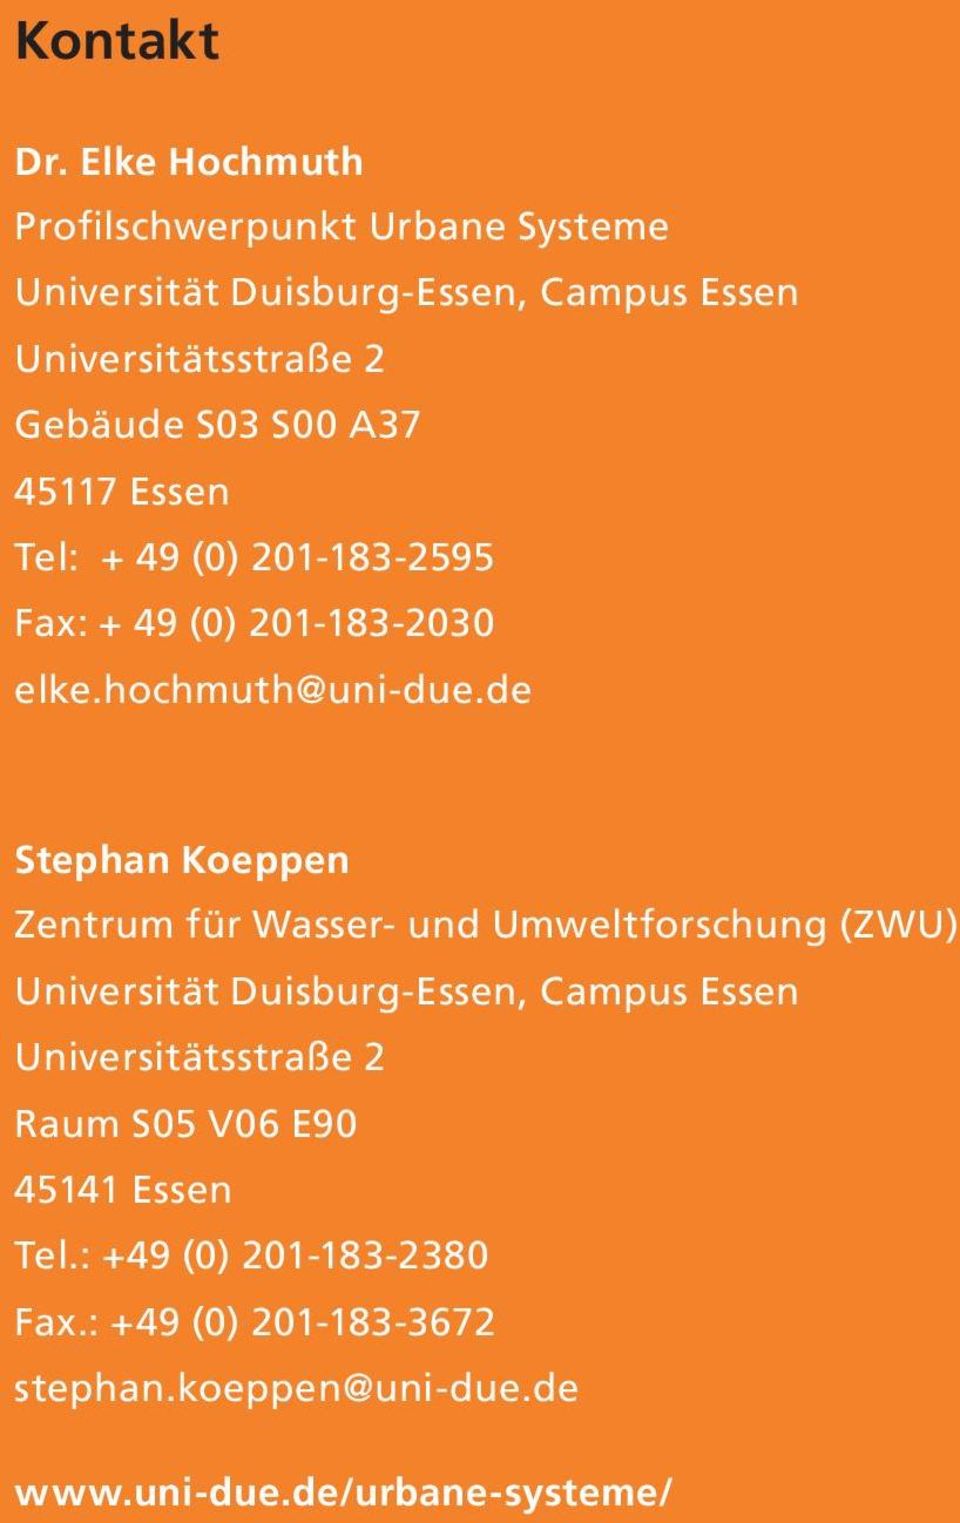 S00 A37 45117 Essen Tel: + 49 (0) 201-183-2595 Fax: + 49 (0) 201-183-2030 elke.hochmuth@uni-due.